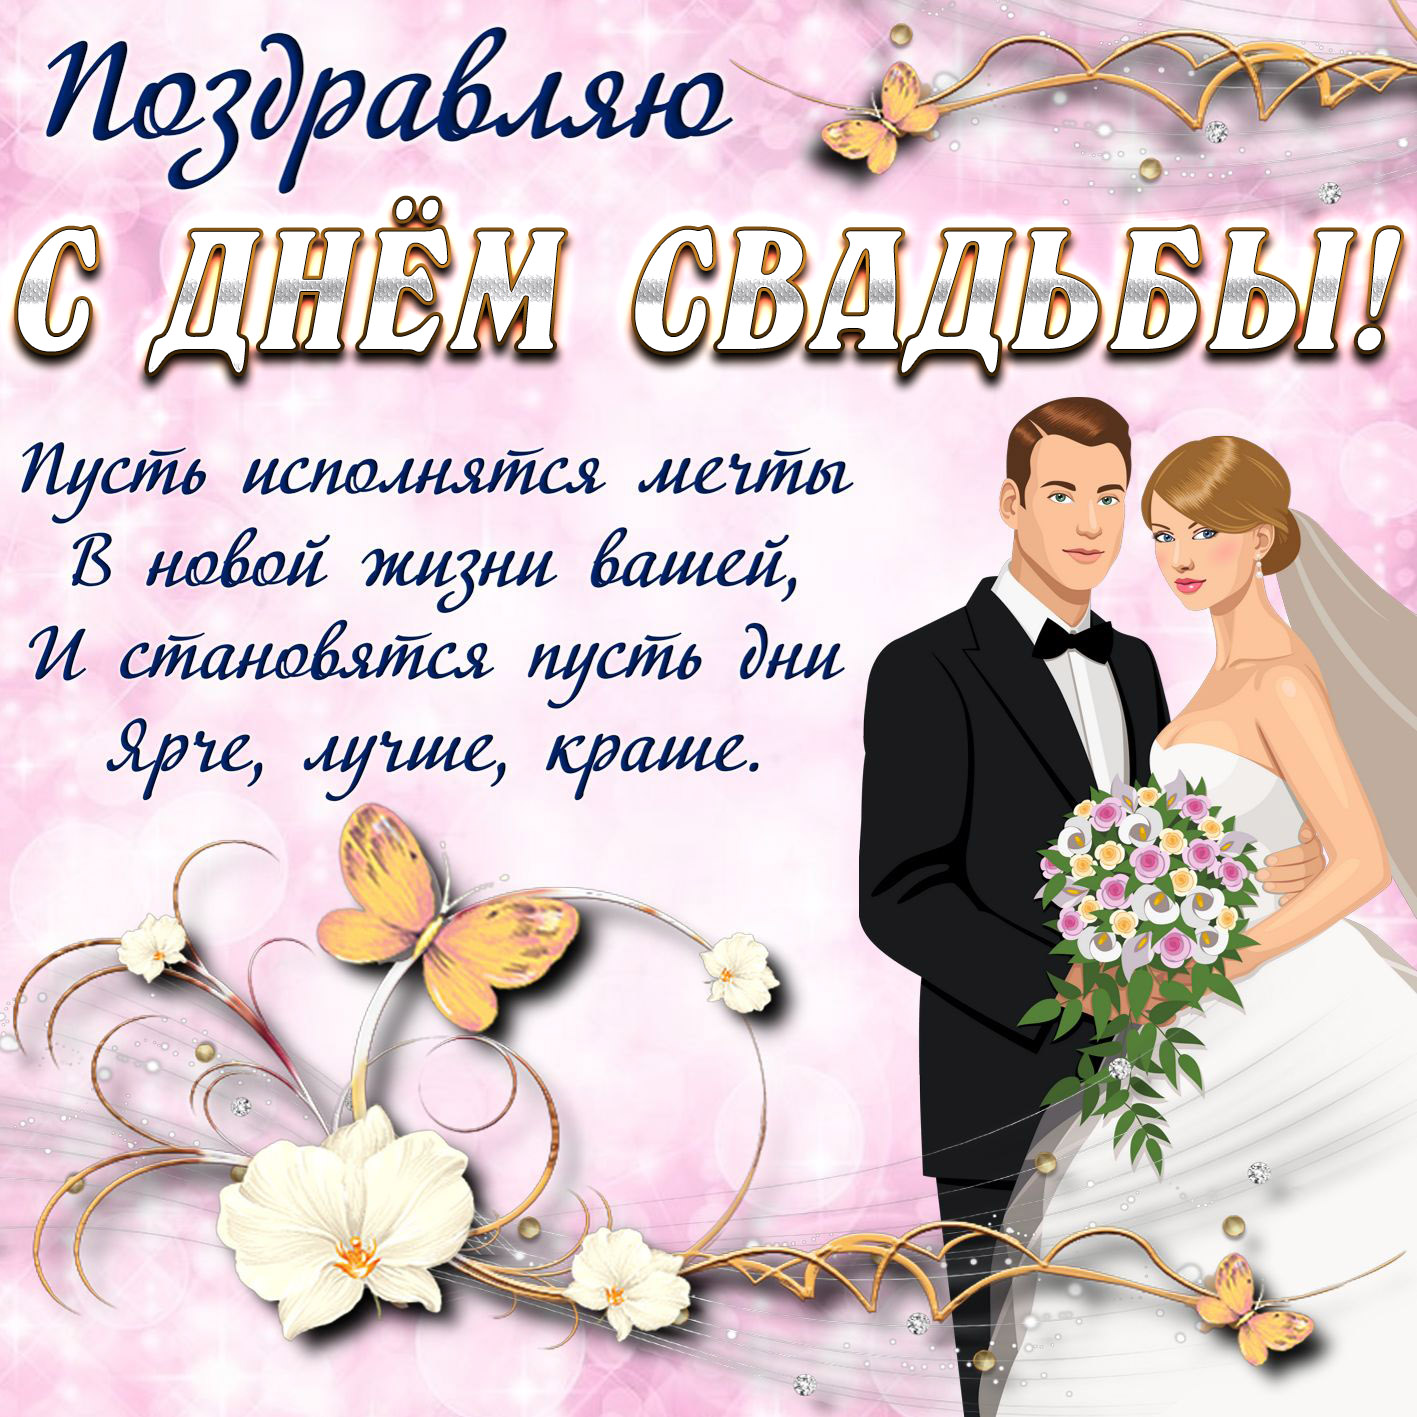 Поздравление с днем свадьбы фото открытка